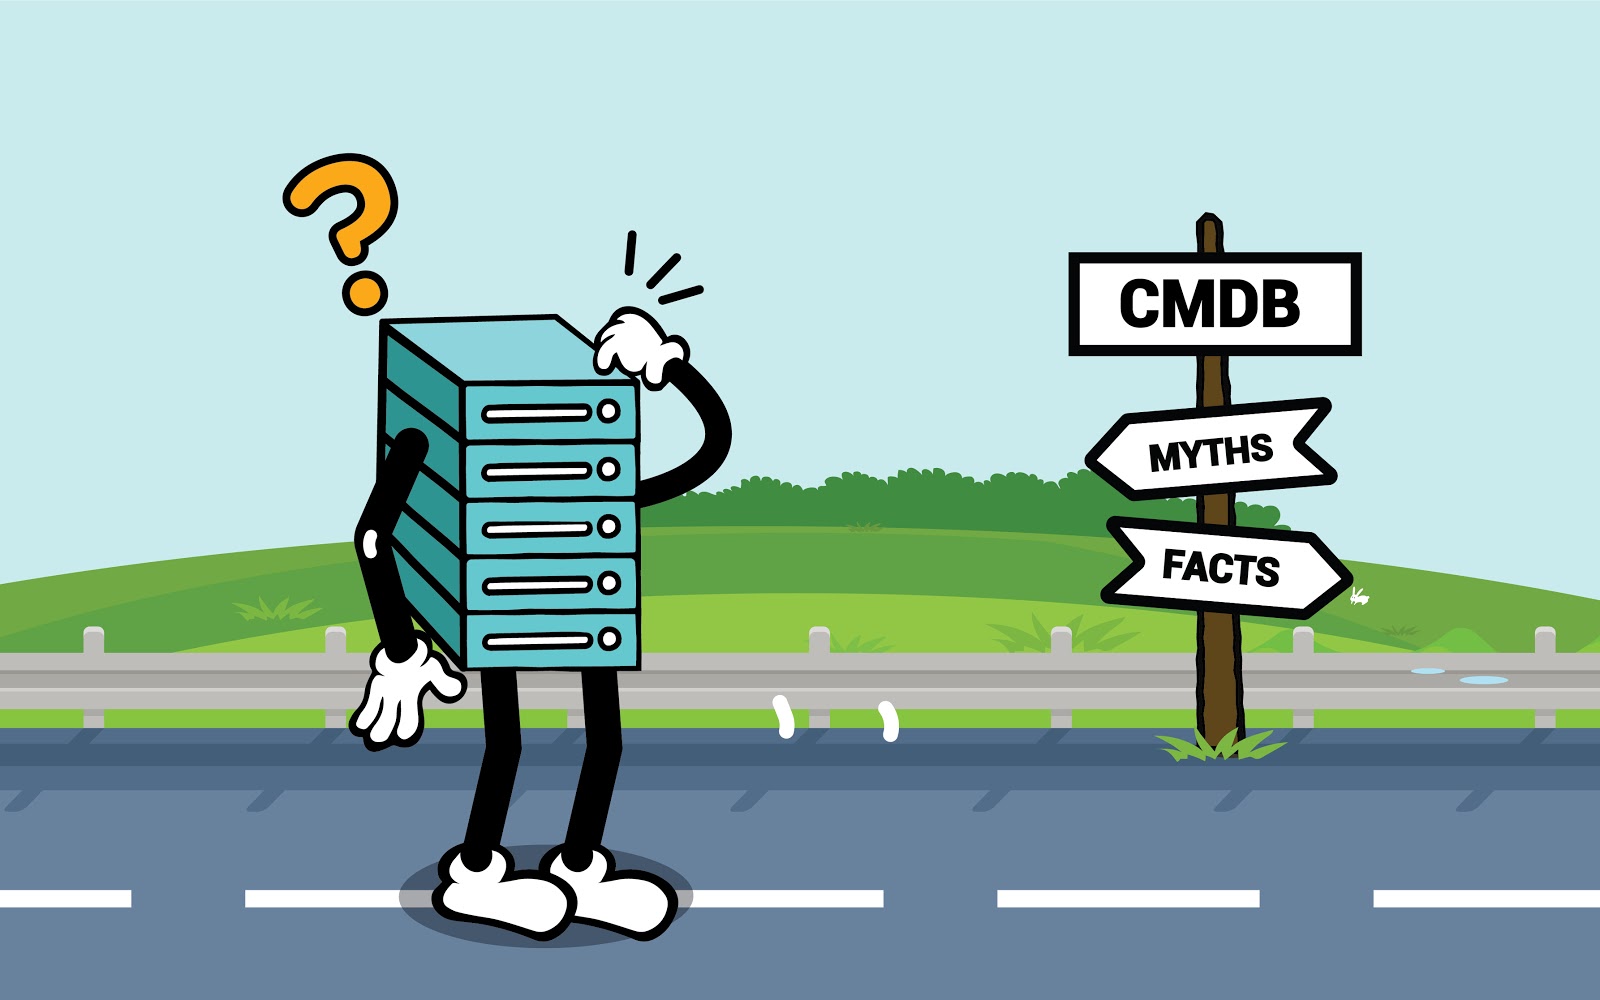 CMDB myths